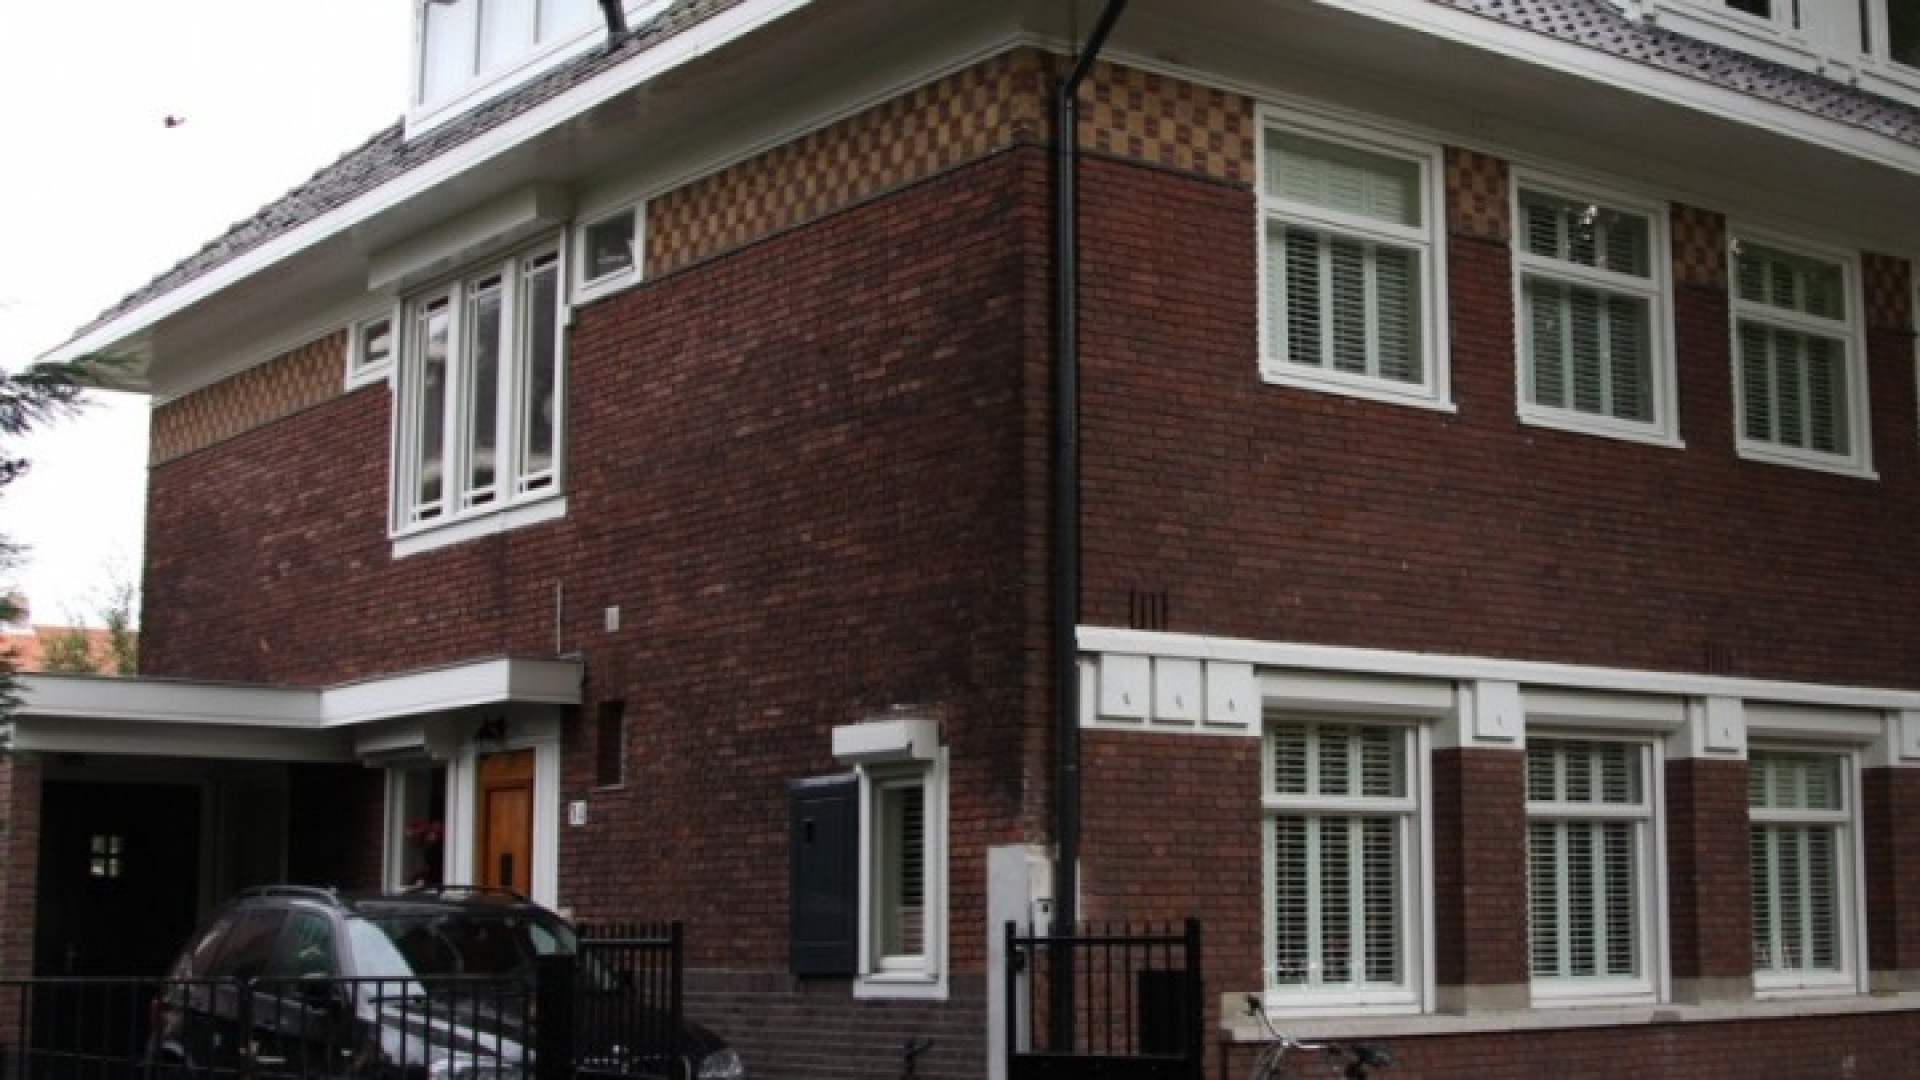 Huis Doutzen Kroes in Amsterdam Zuid te huur gezet. Zie foto's